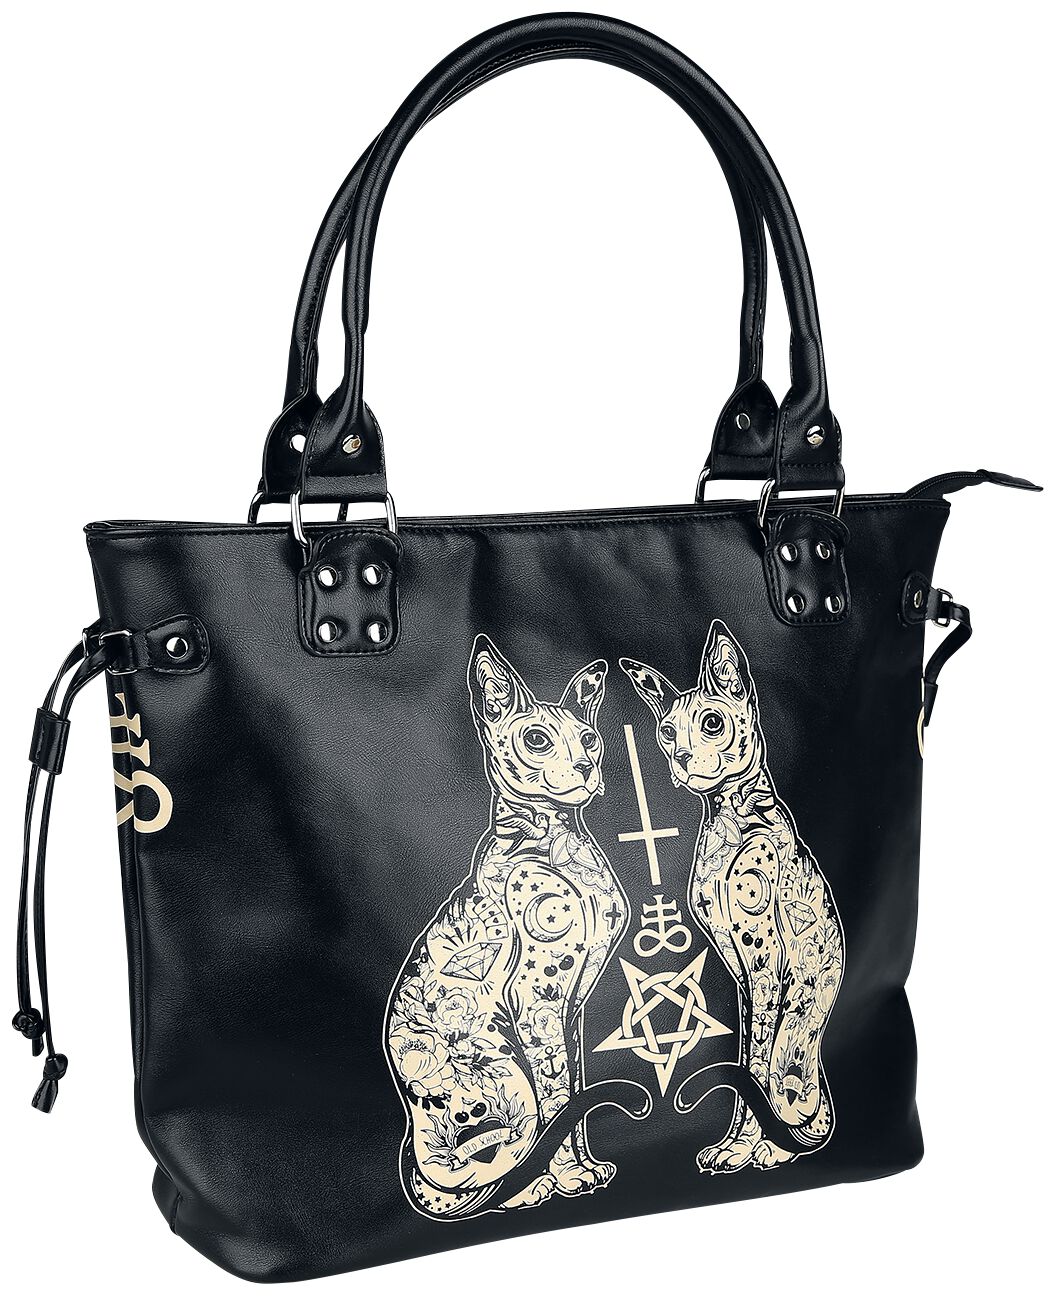 Image of Borsetta Gothic di Banned Alternative - Esoteric Cat Bag - Donna - nero/bianco